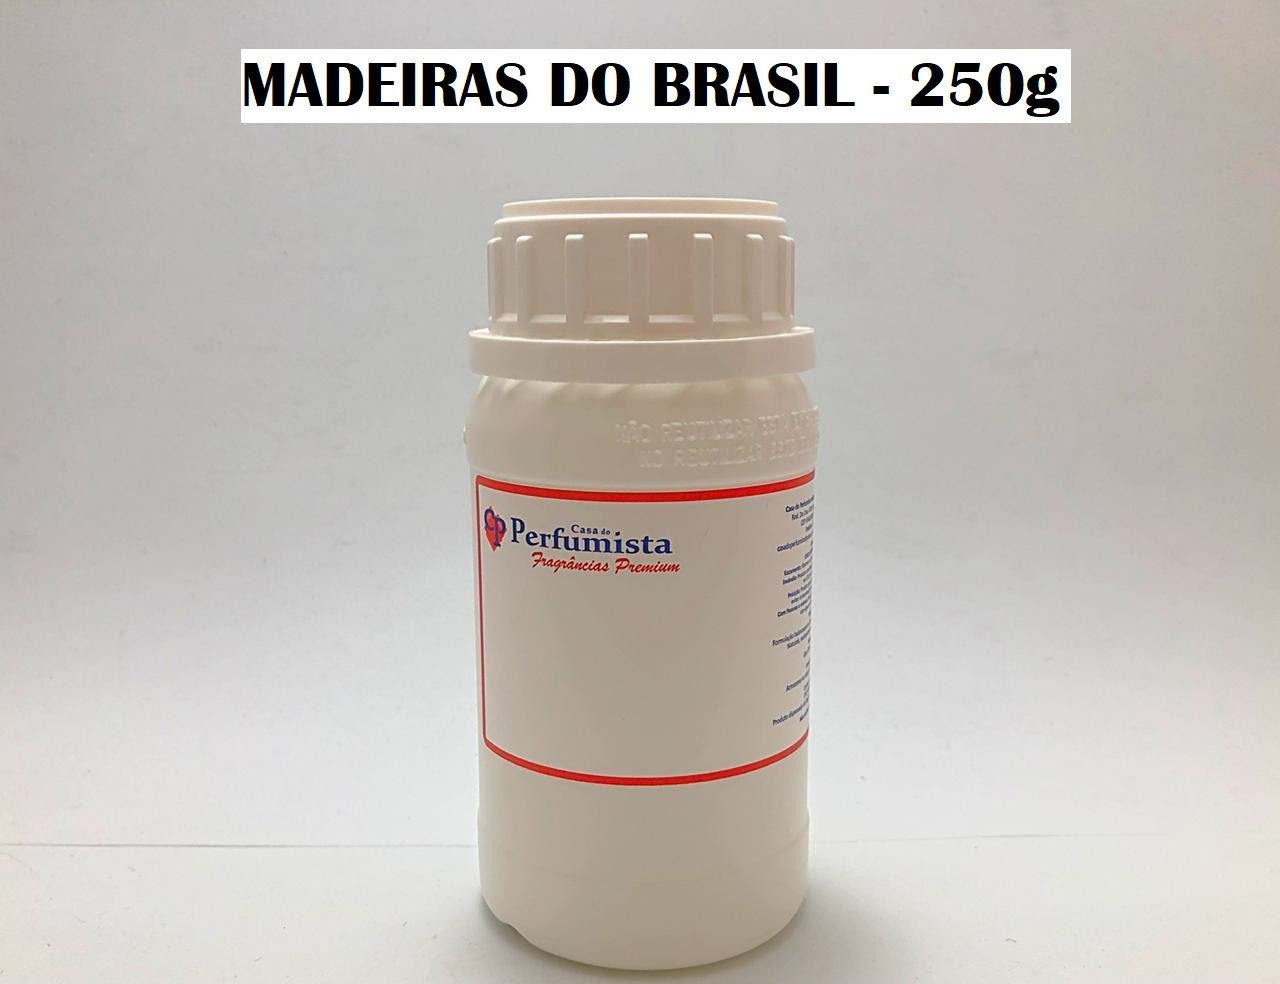 MADEIRAS DO BRASIL - 250g